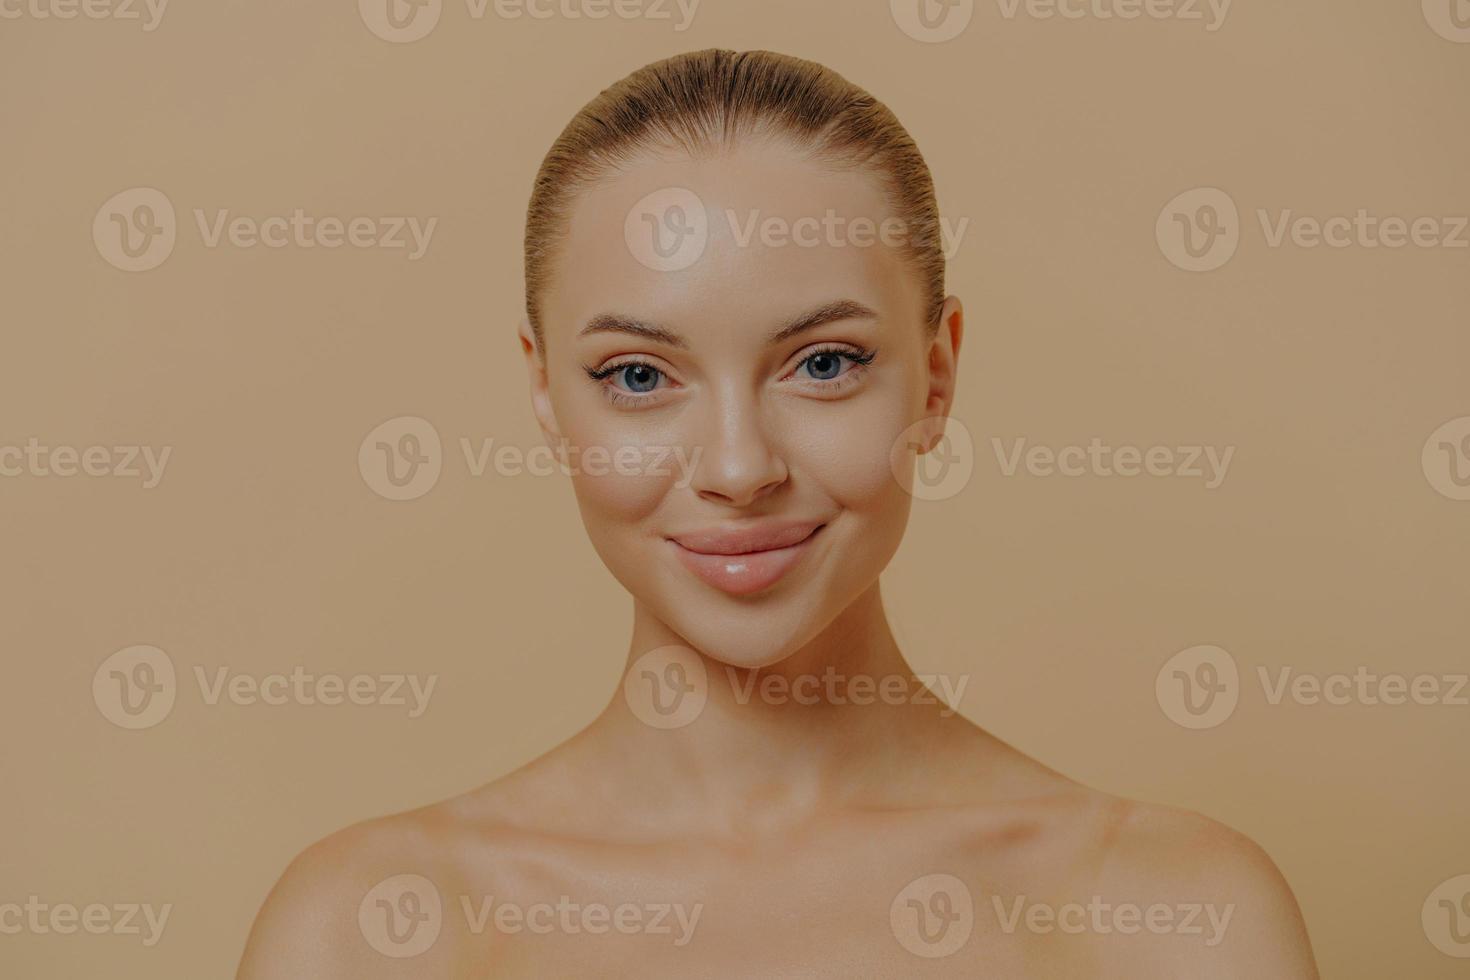 retrato de beleza de mulher encantadora com pele brilhante saudável posando seminua contra parede bege foto